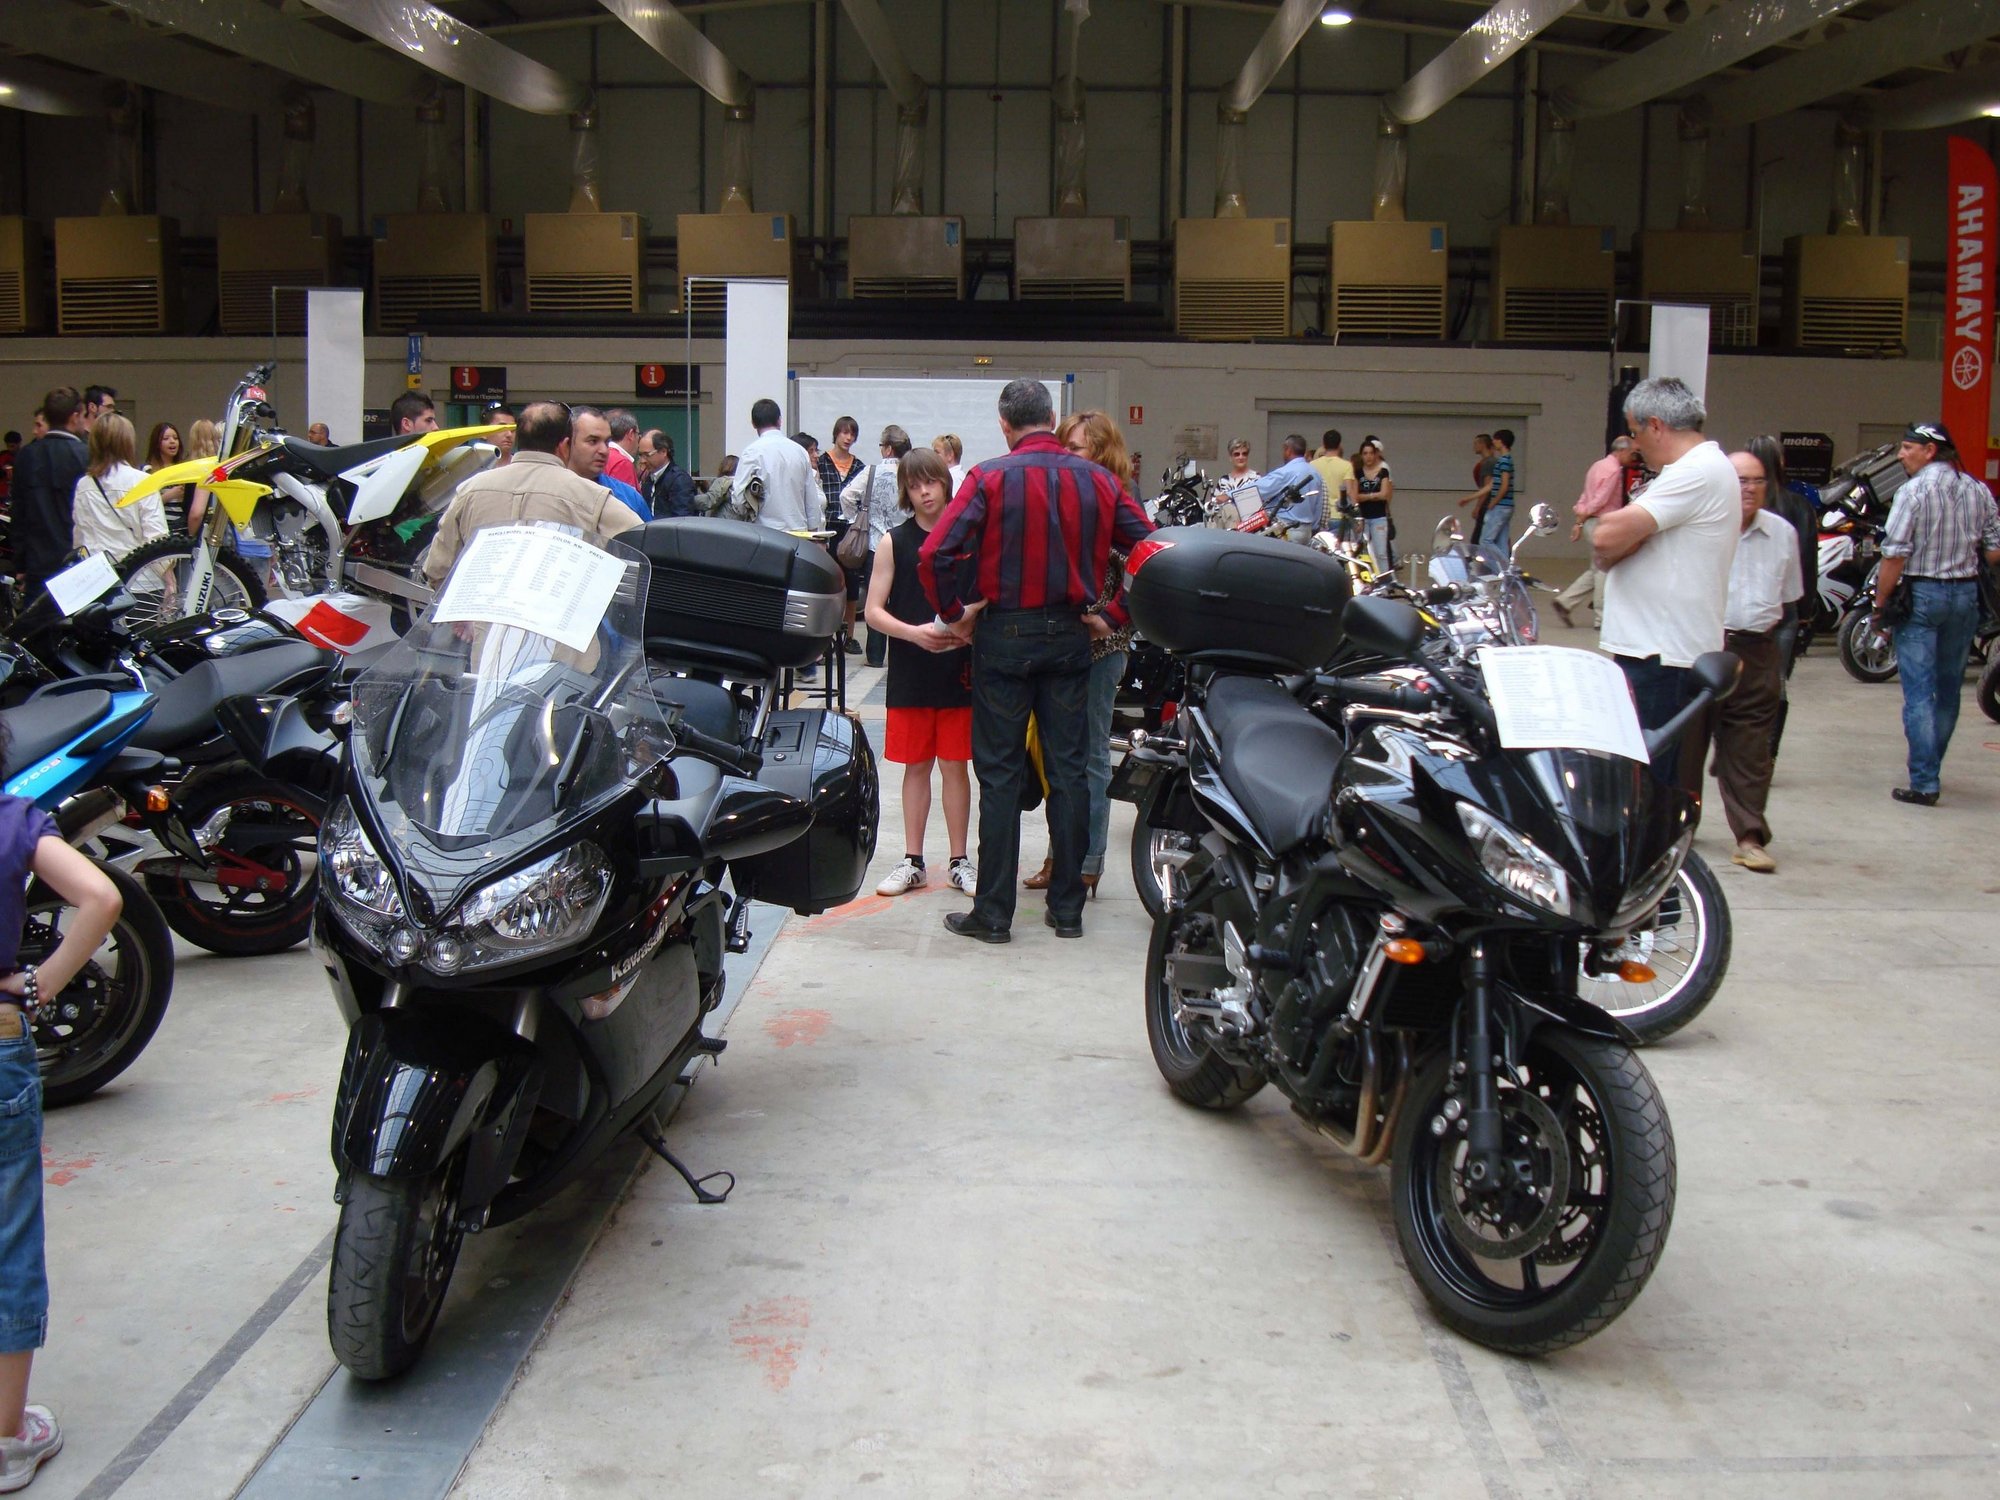 Fira de Lleida organiza una muestra de motos, BTT y tuning del 24 y el 25 de marzo